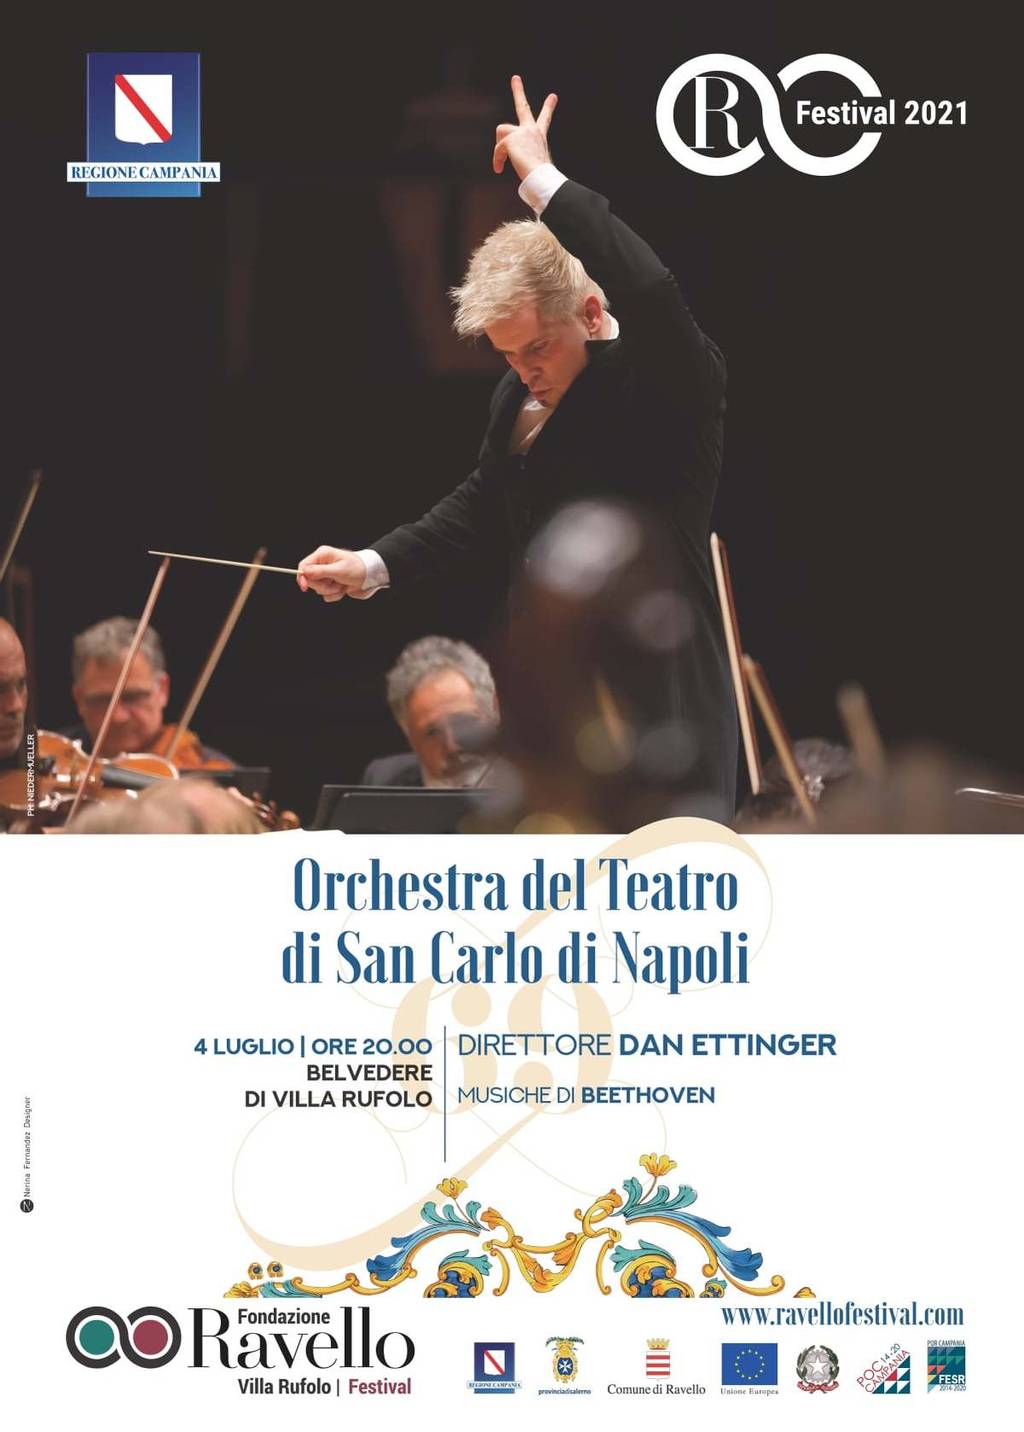 San Carlo Theatre Orchestra of Naples